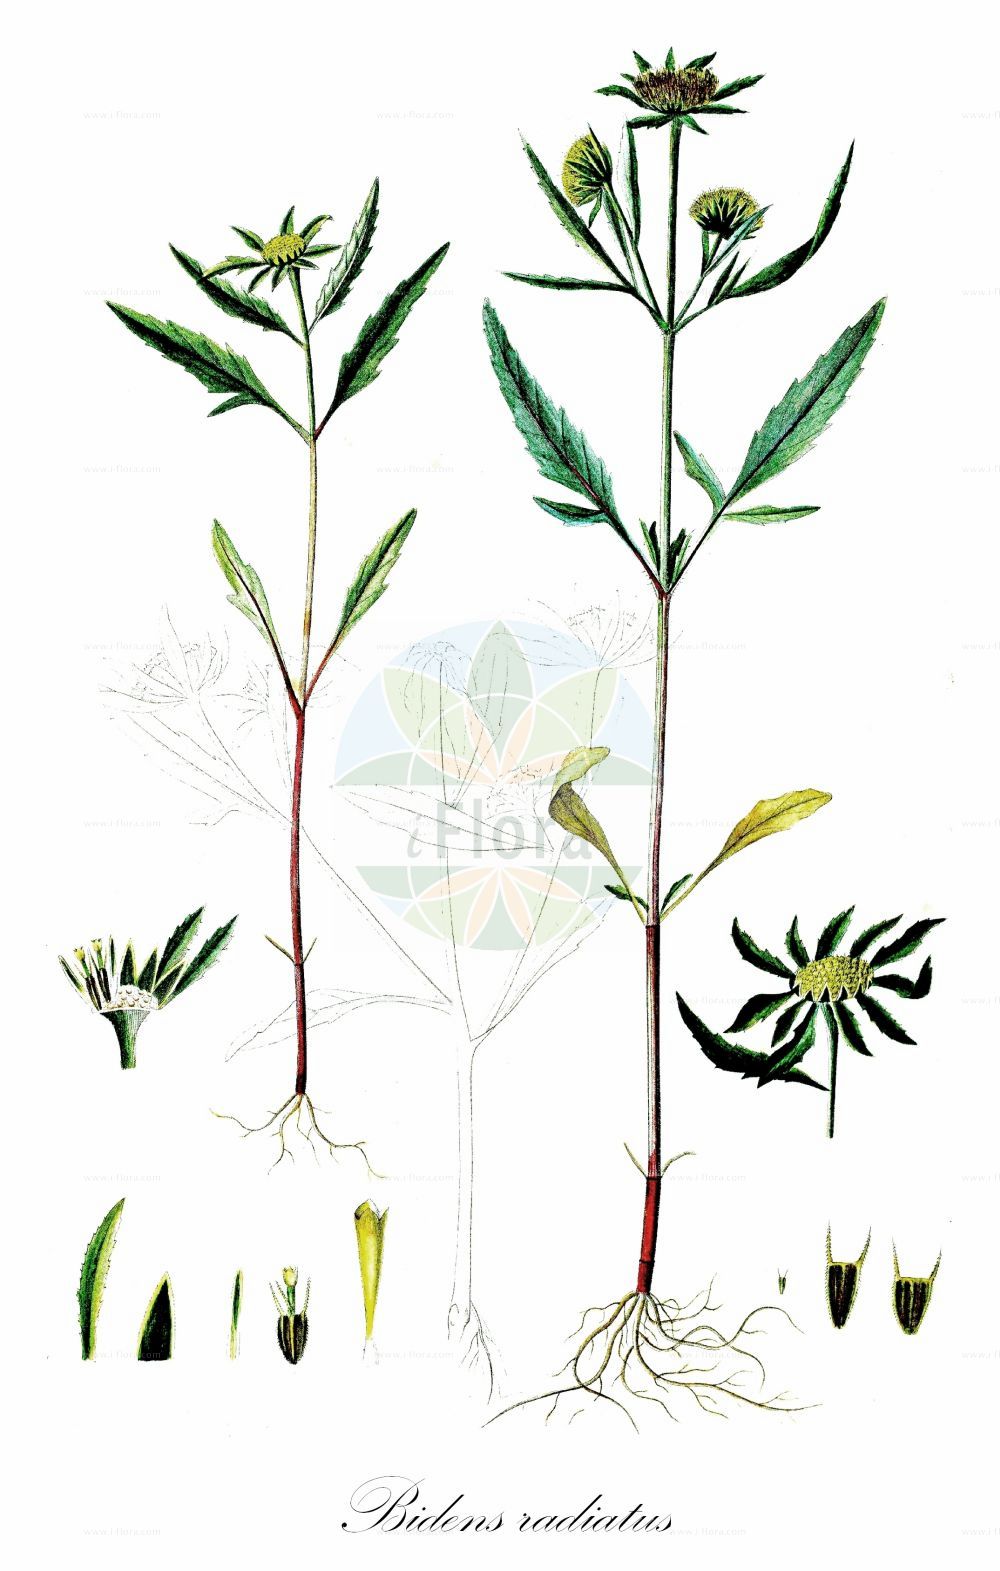 Historische Abbildung von Bidens radiatus (Strahliger Zweizahn - Greater Bur-marigold). Das Bild zeigt Blatt, Bluete, Frucht und Same. ---- Historical Drawing of Bidens radiatus (Strahliger Zweizahn - Greater Bur-marigold). The image is showing leaf, flower, fruit and seed.(Bidens radiatus,Strahliger Zweizahn,Greater Bur-marigold,Bidens radiatus,Strahliger Zweizahn,Grosser Zweizahn,Greater Bur-marigold,Hairy Beggarticks,Bidens,Zweizahn,Beggarticks,Asteraceae,Korbblütengewächse,Daisy family,Blatt,Bluete,Frucht,Same,leaf,flower,fruit,seed,Oeder (1761-1883))